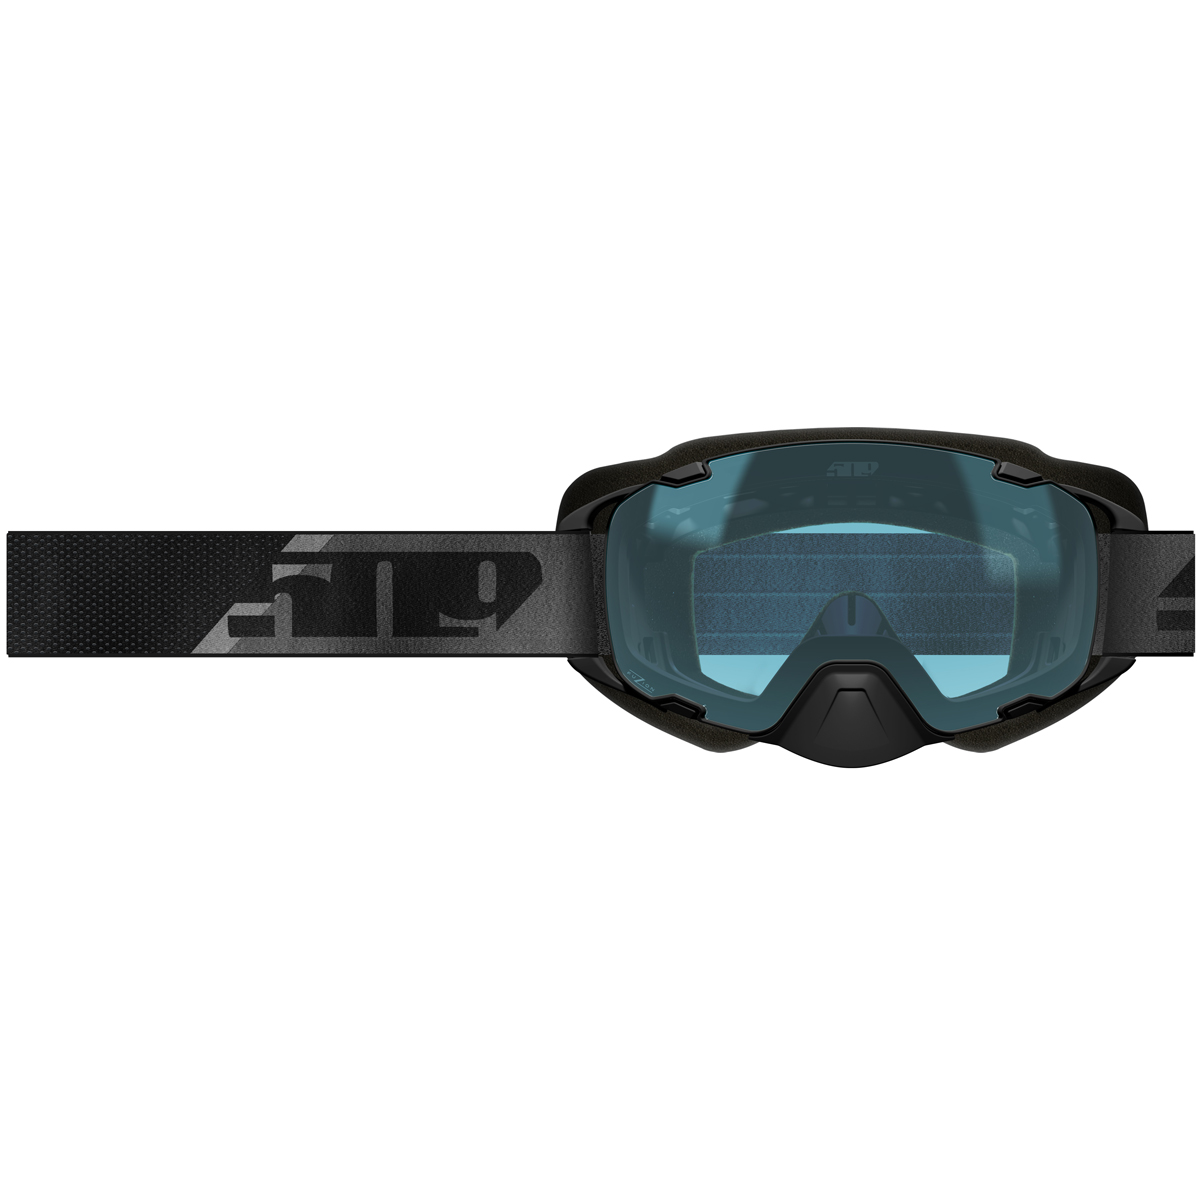 509 goggles adult aviator 2.0 xl fuzion goggles - snowmobile